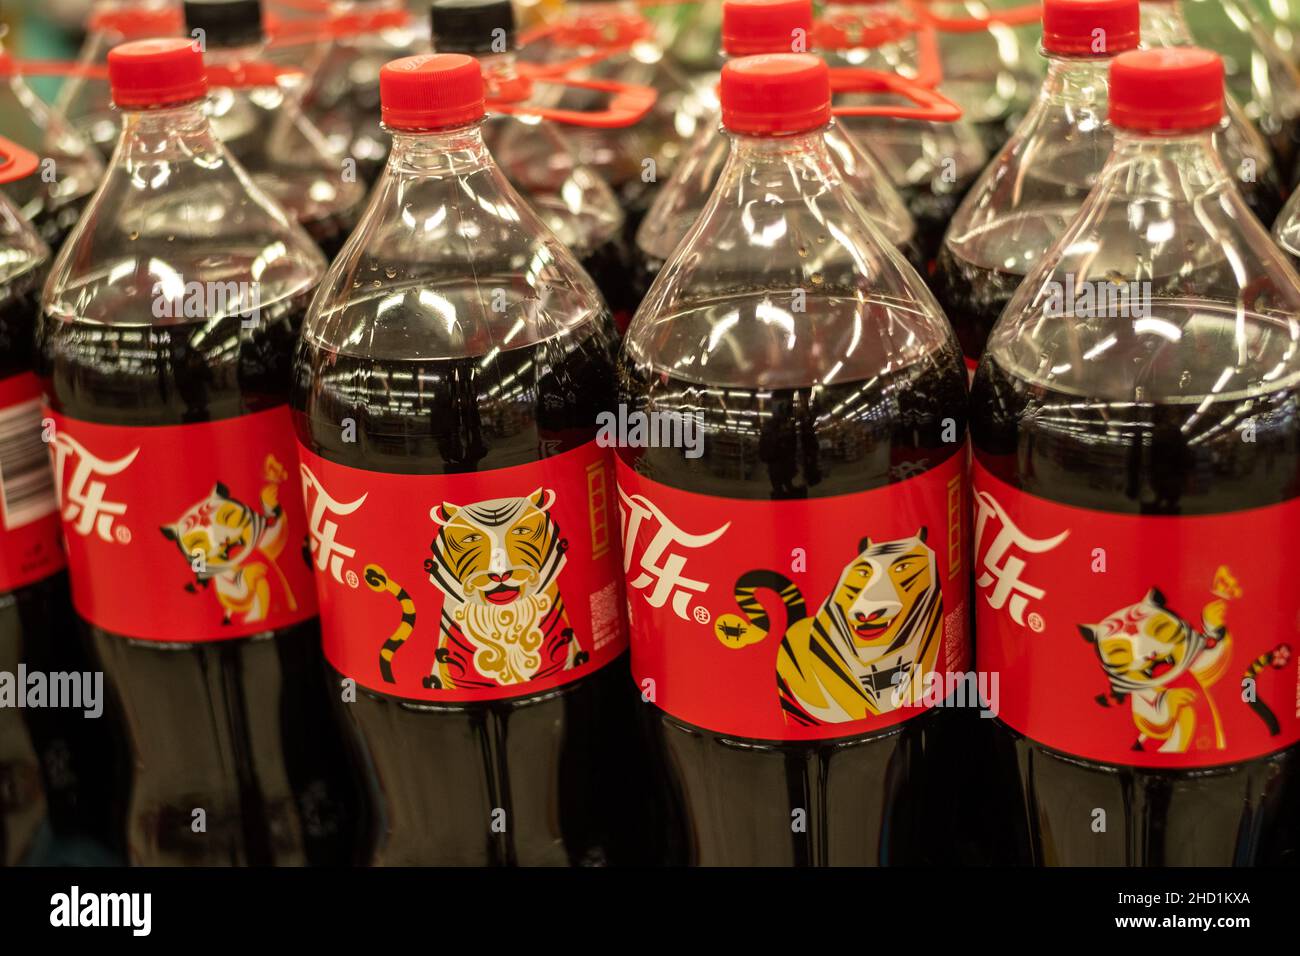 Le bottiglie di Coca-Cola per l'anno della Tigre sono vendute in un supermercato a Pechino, Cina. 02 gennaio 2022 Foto Stock